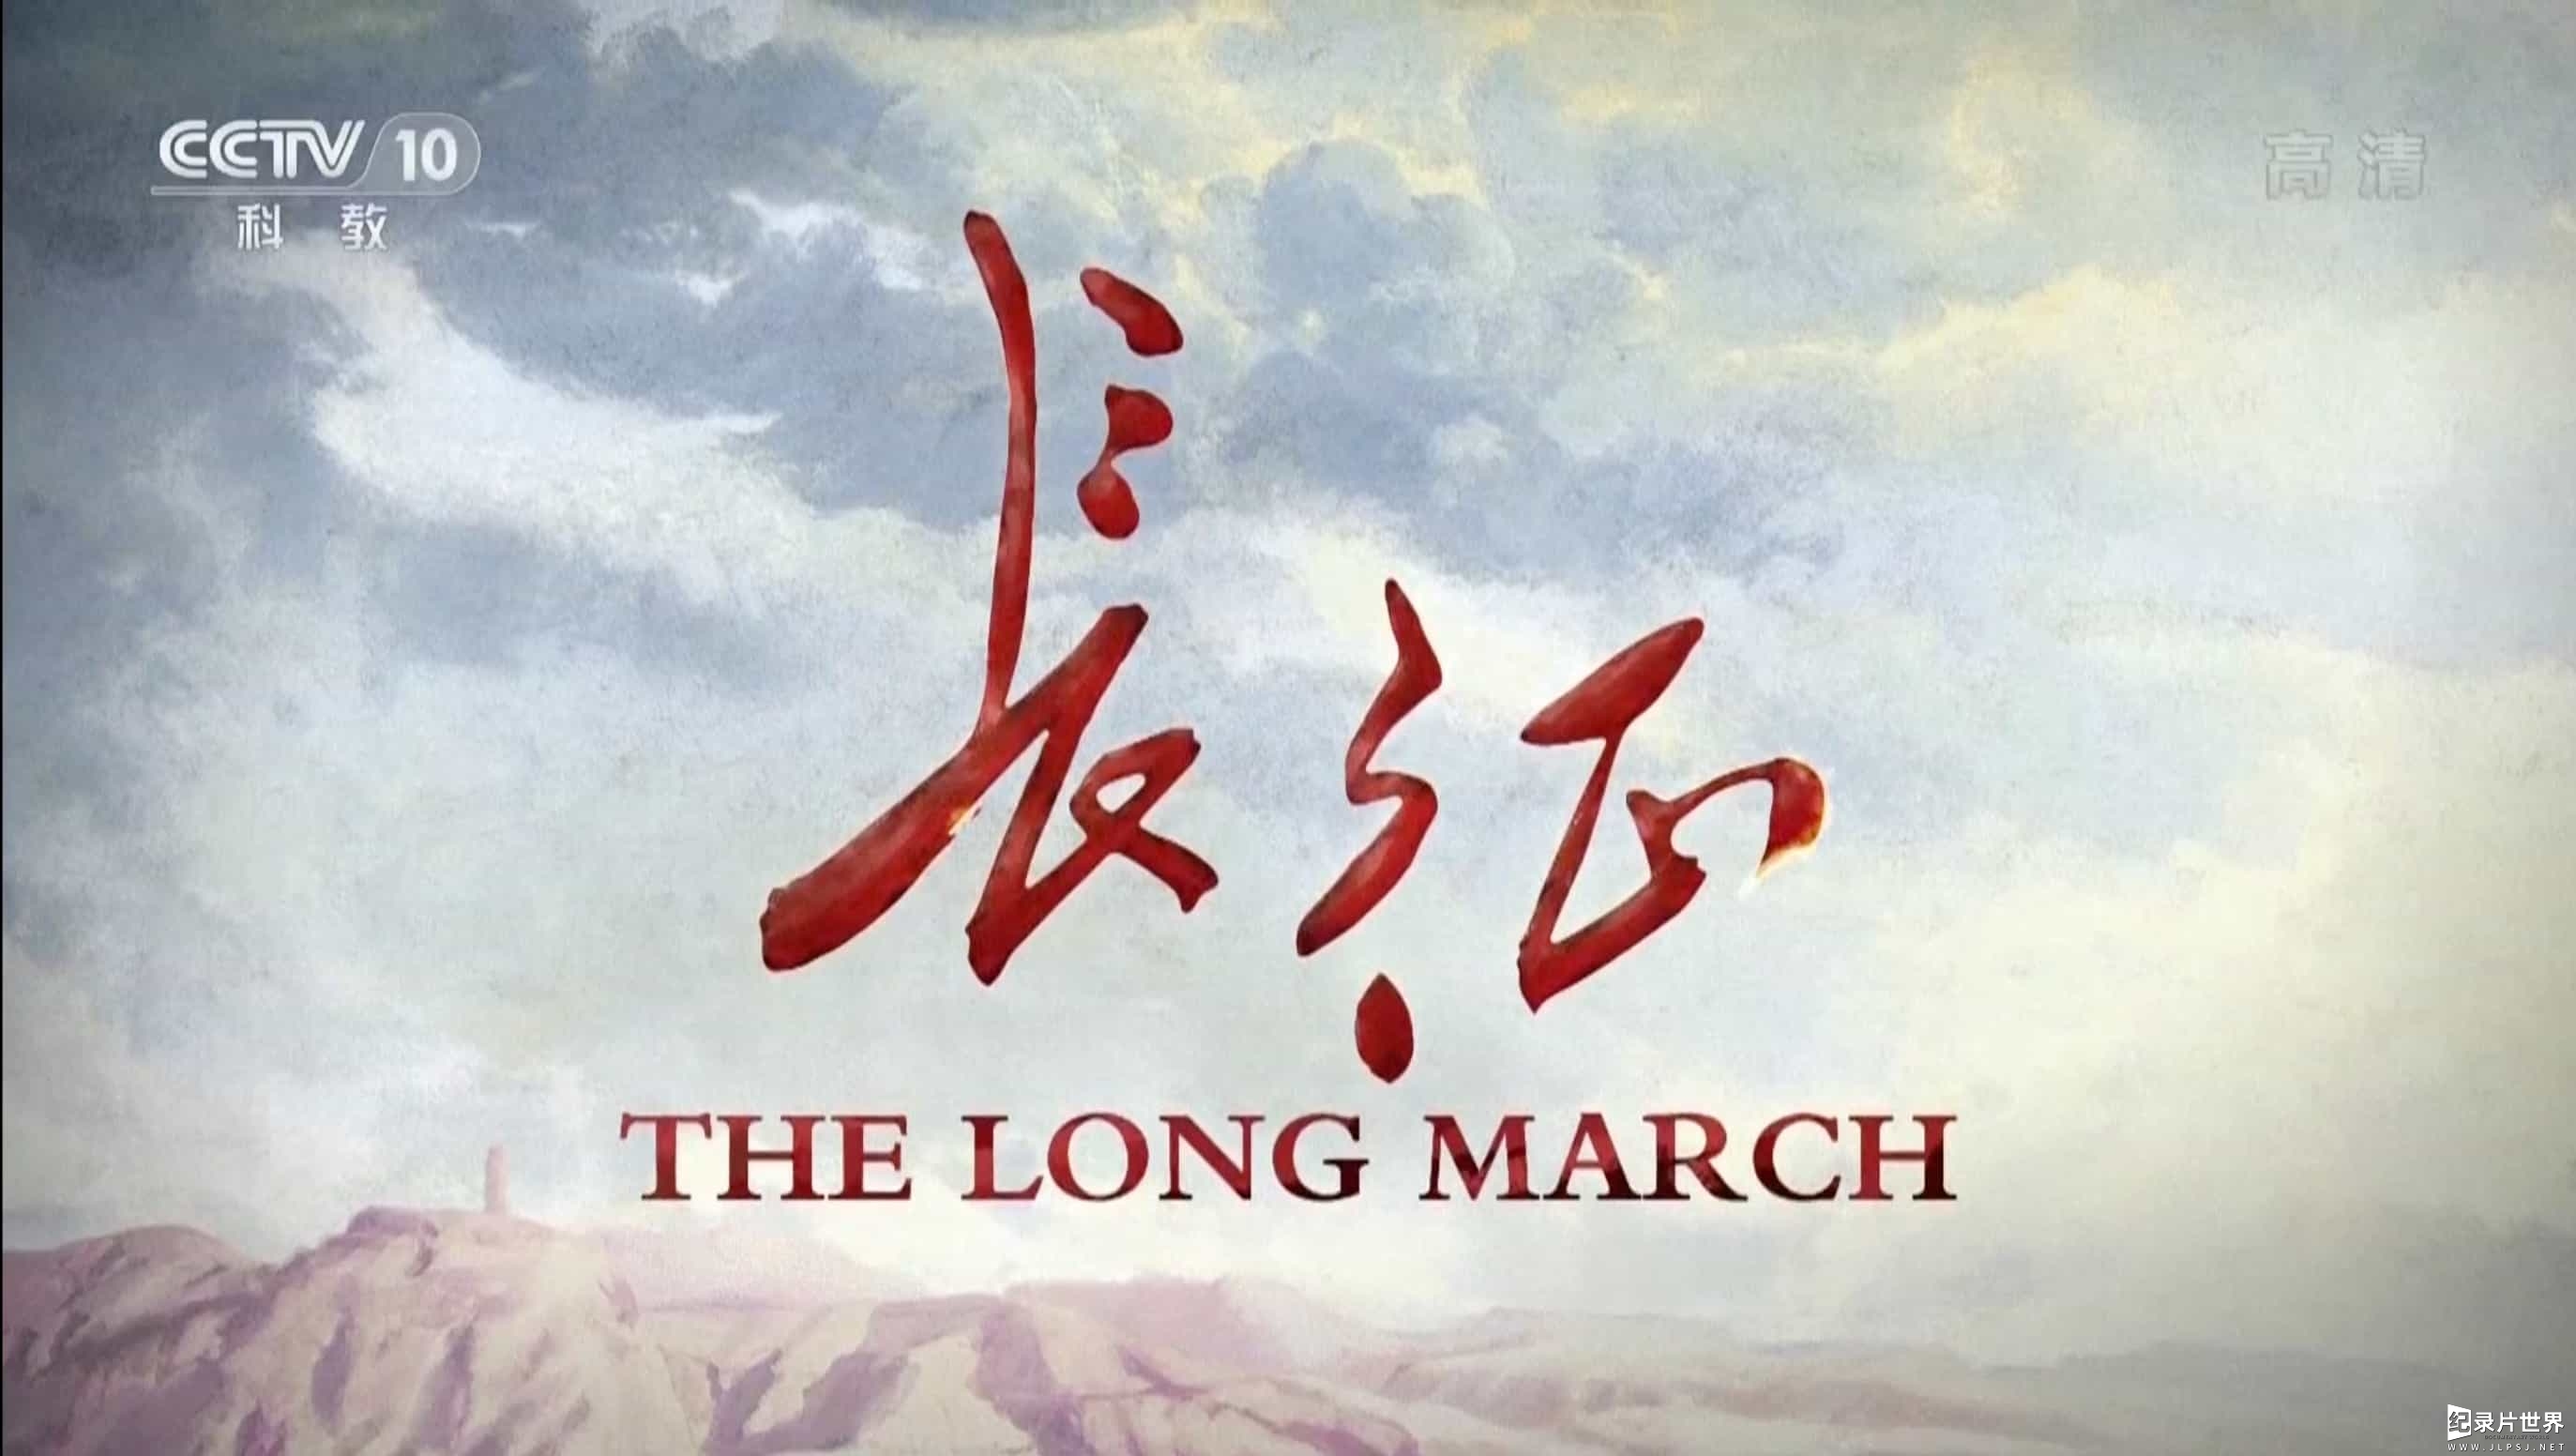 央视纪录片《长征 The Long March》国际版 全2集